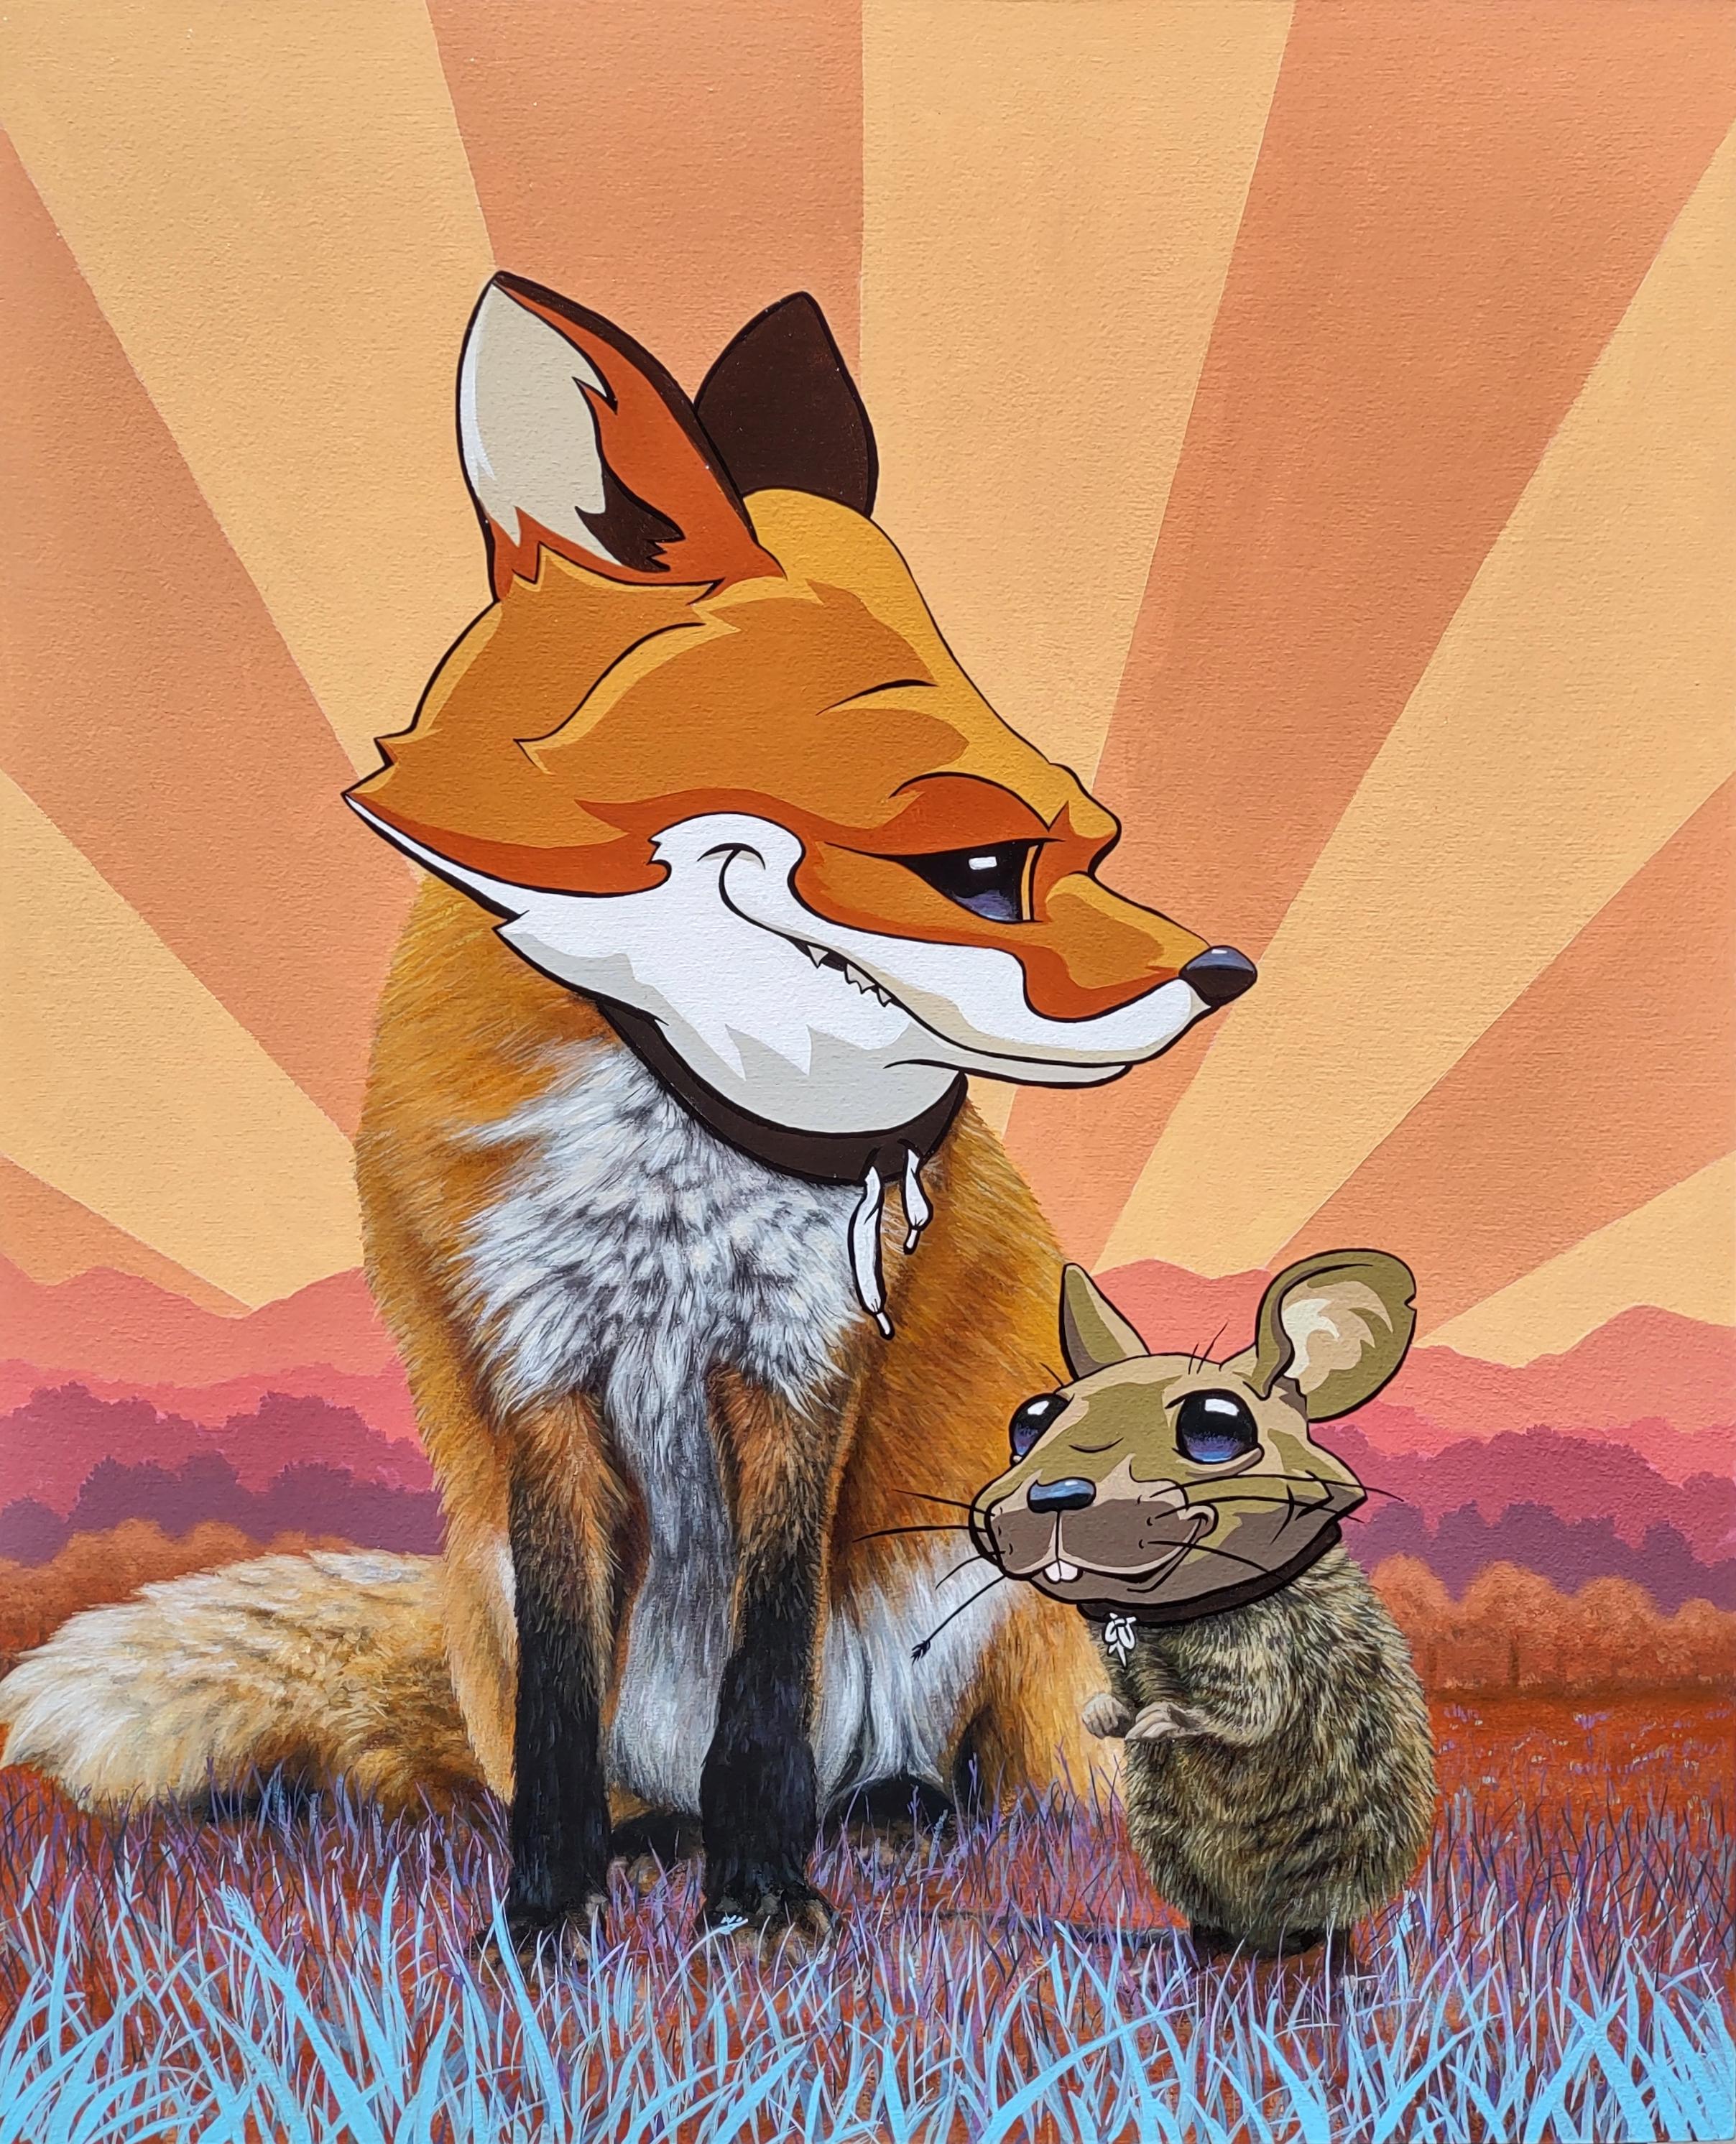 Animal Painting 3rd Version (Ben Patterson) - "Masques que nous portons, pour coïncider", peinture à l'huile d'un renard avec un masque de renard